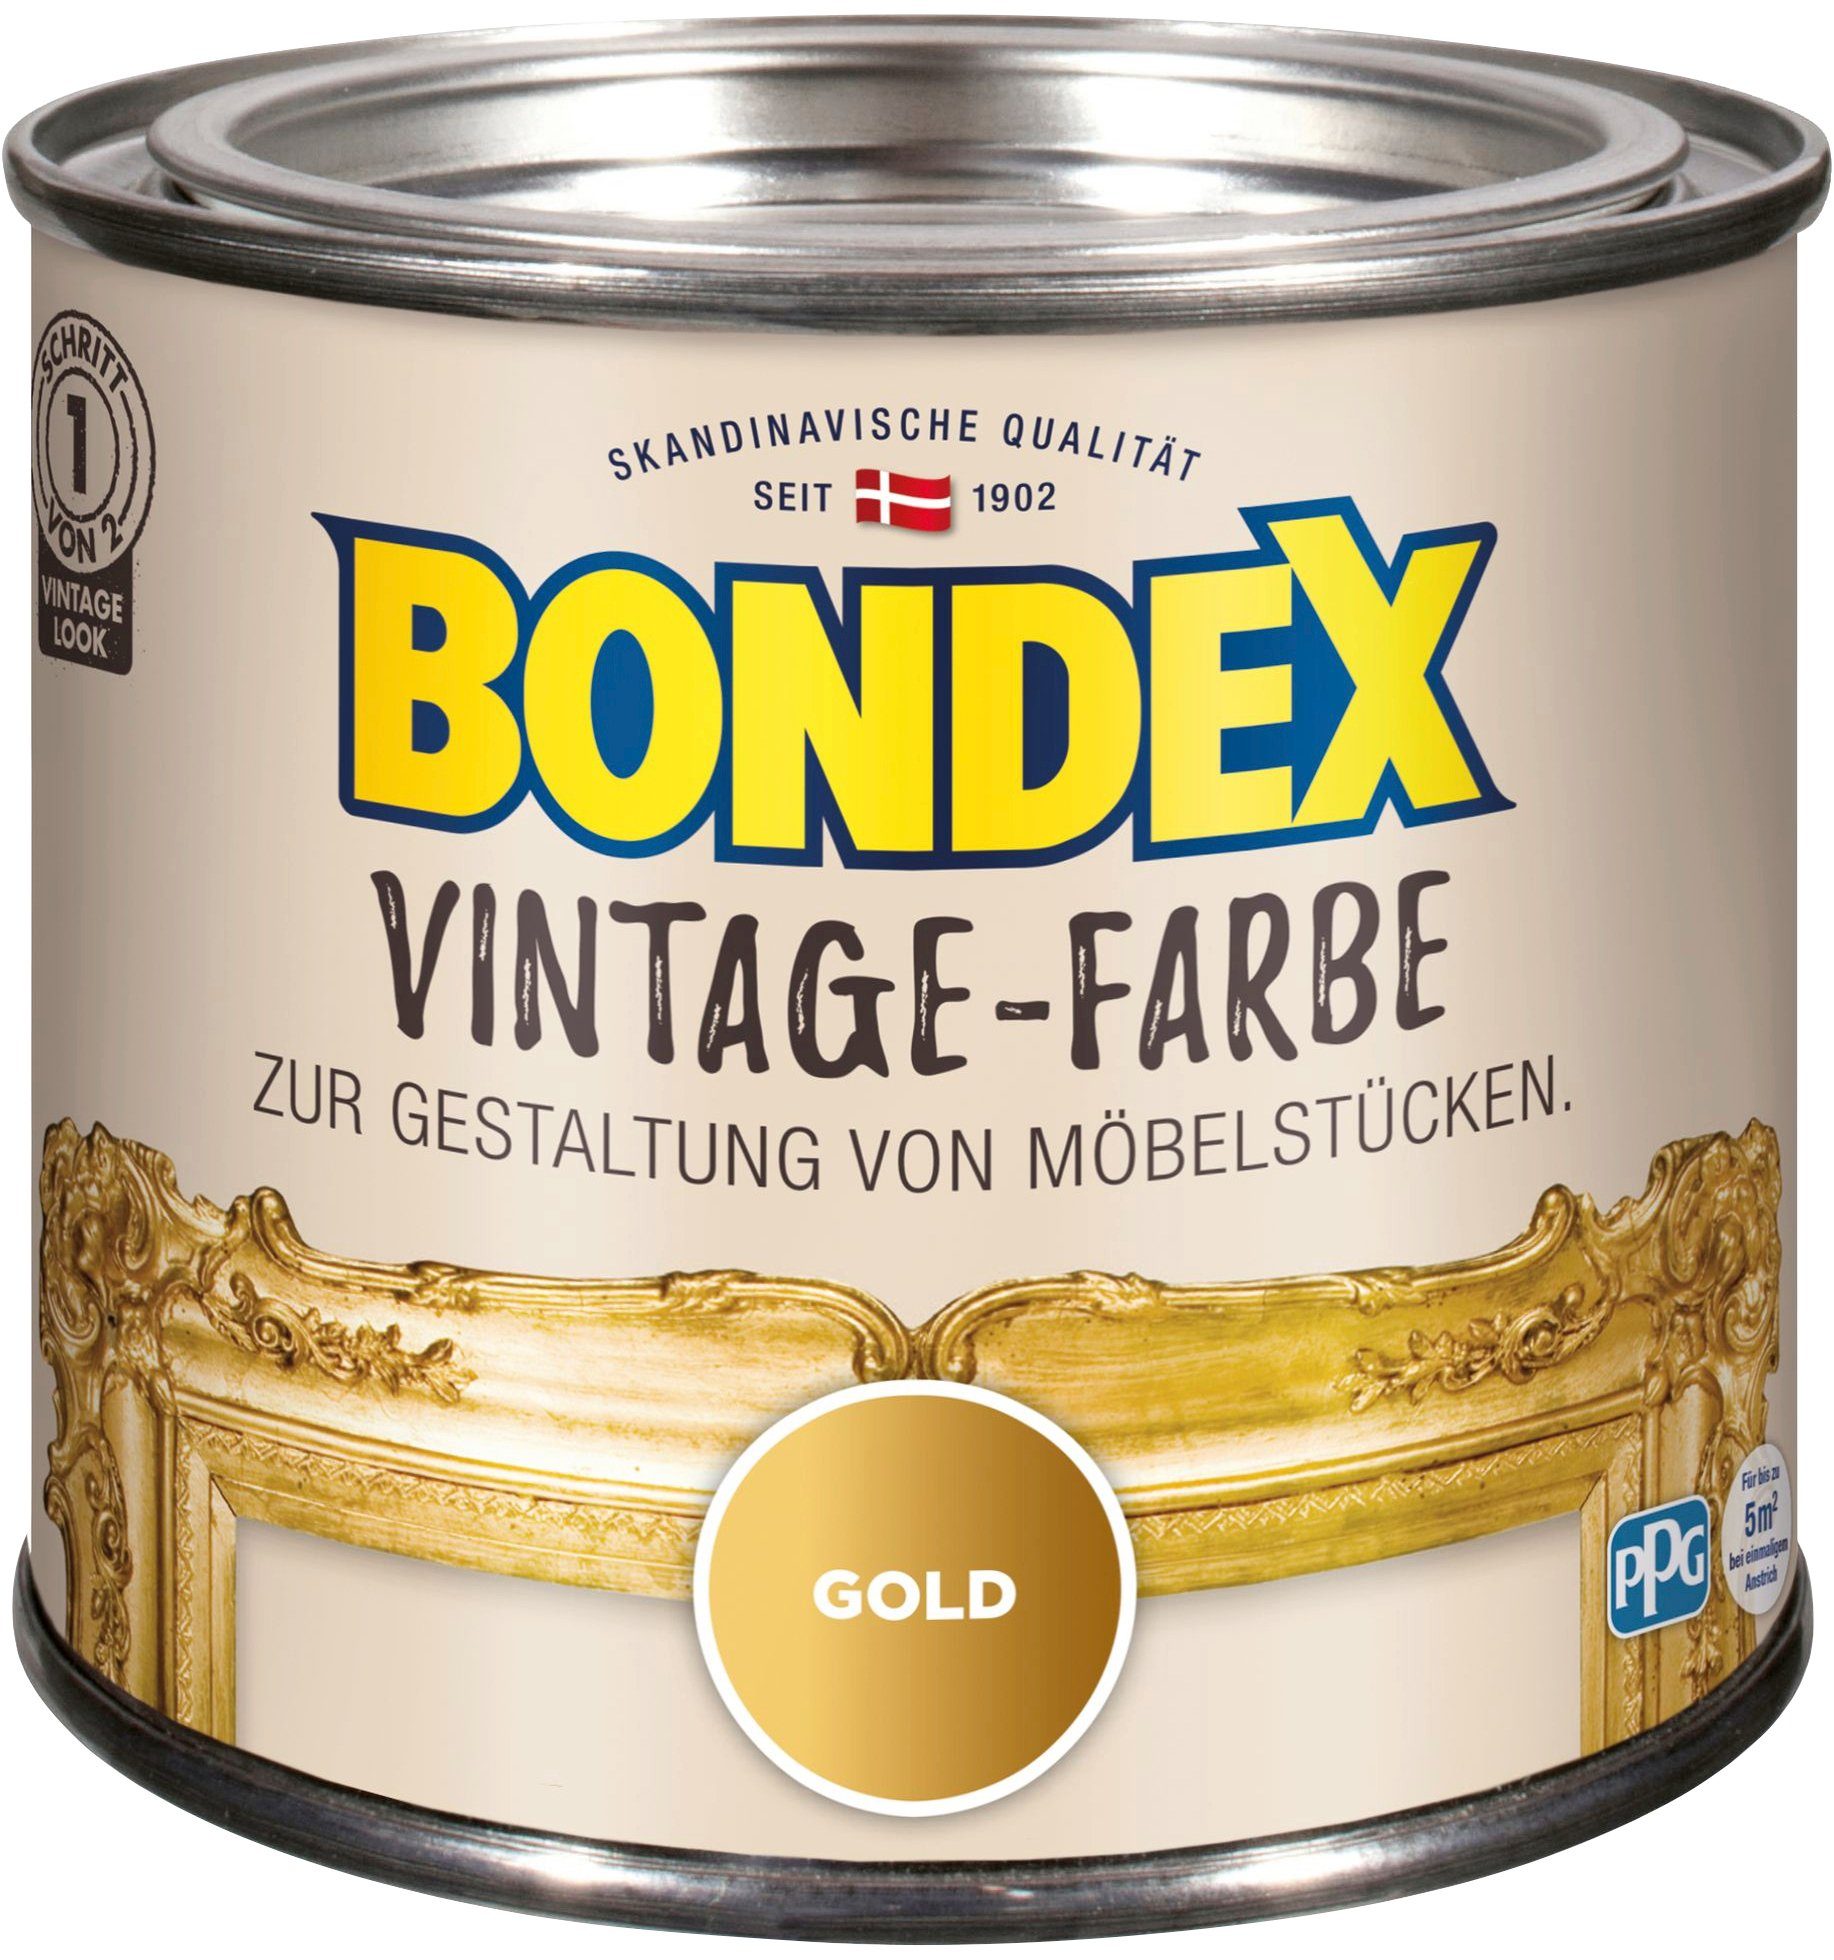 Bastelfarbe Gestaltung von Gold Bondex Möbelstücken, zur VINTAGE-FARBE, l 0,375